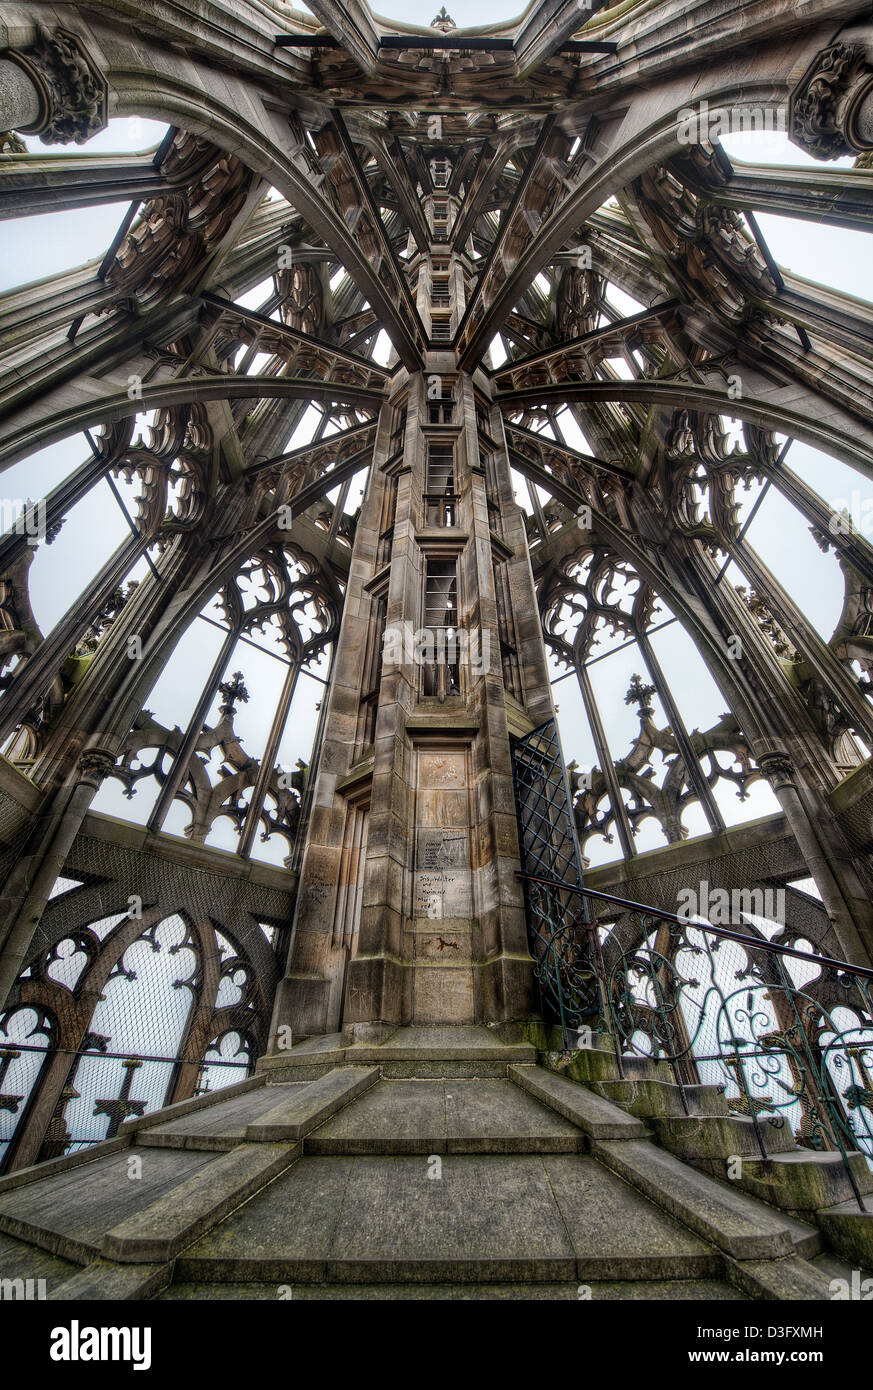 La guglia di Ulm Minster in Germania una chiesa gotica iniziata nel XIV secolo e attualmente il più alto la Chiesa in tutto il mondo. Foto Stock